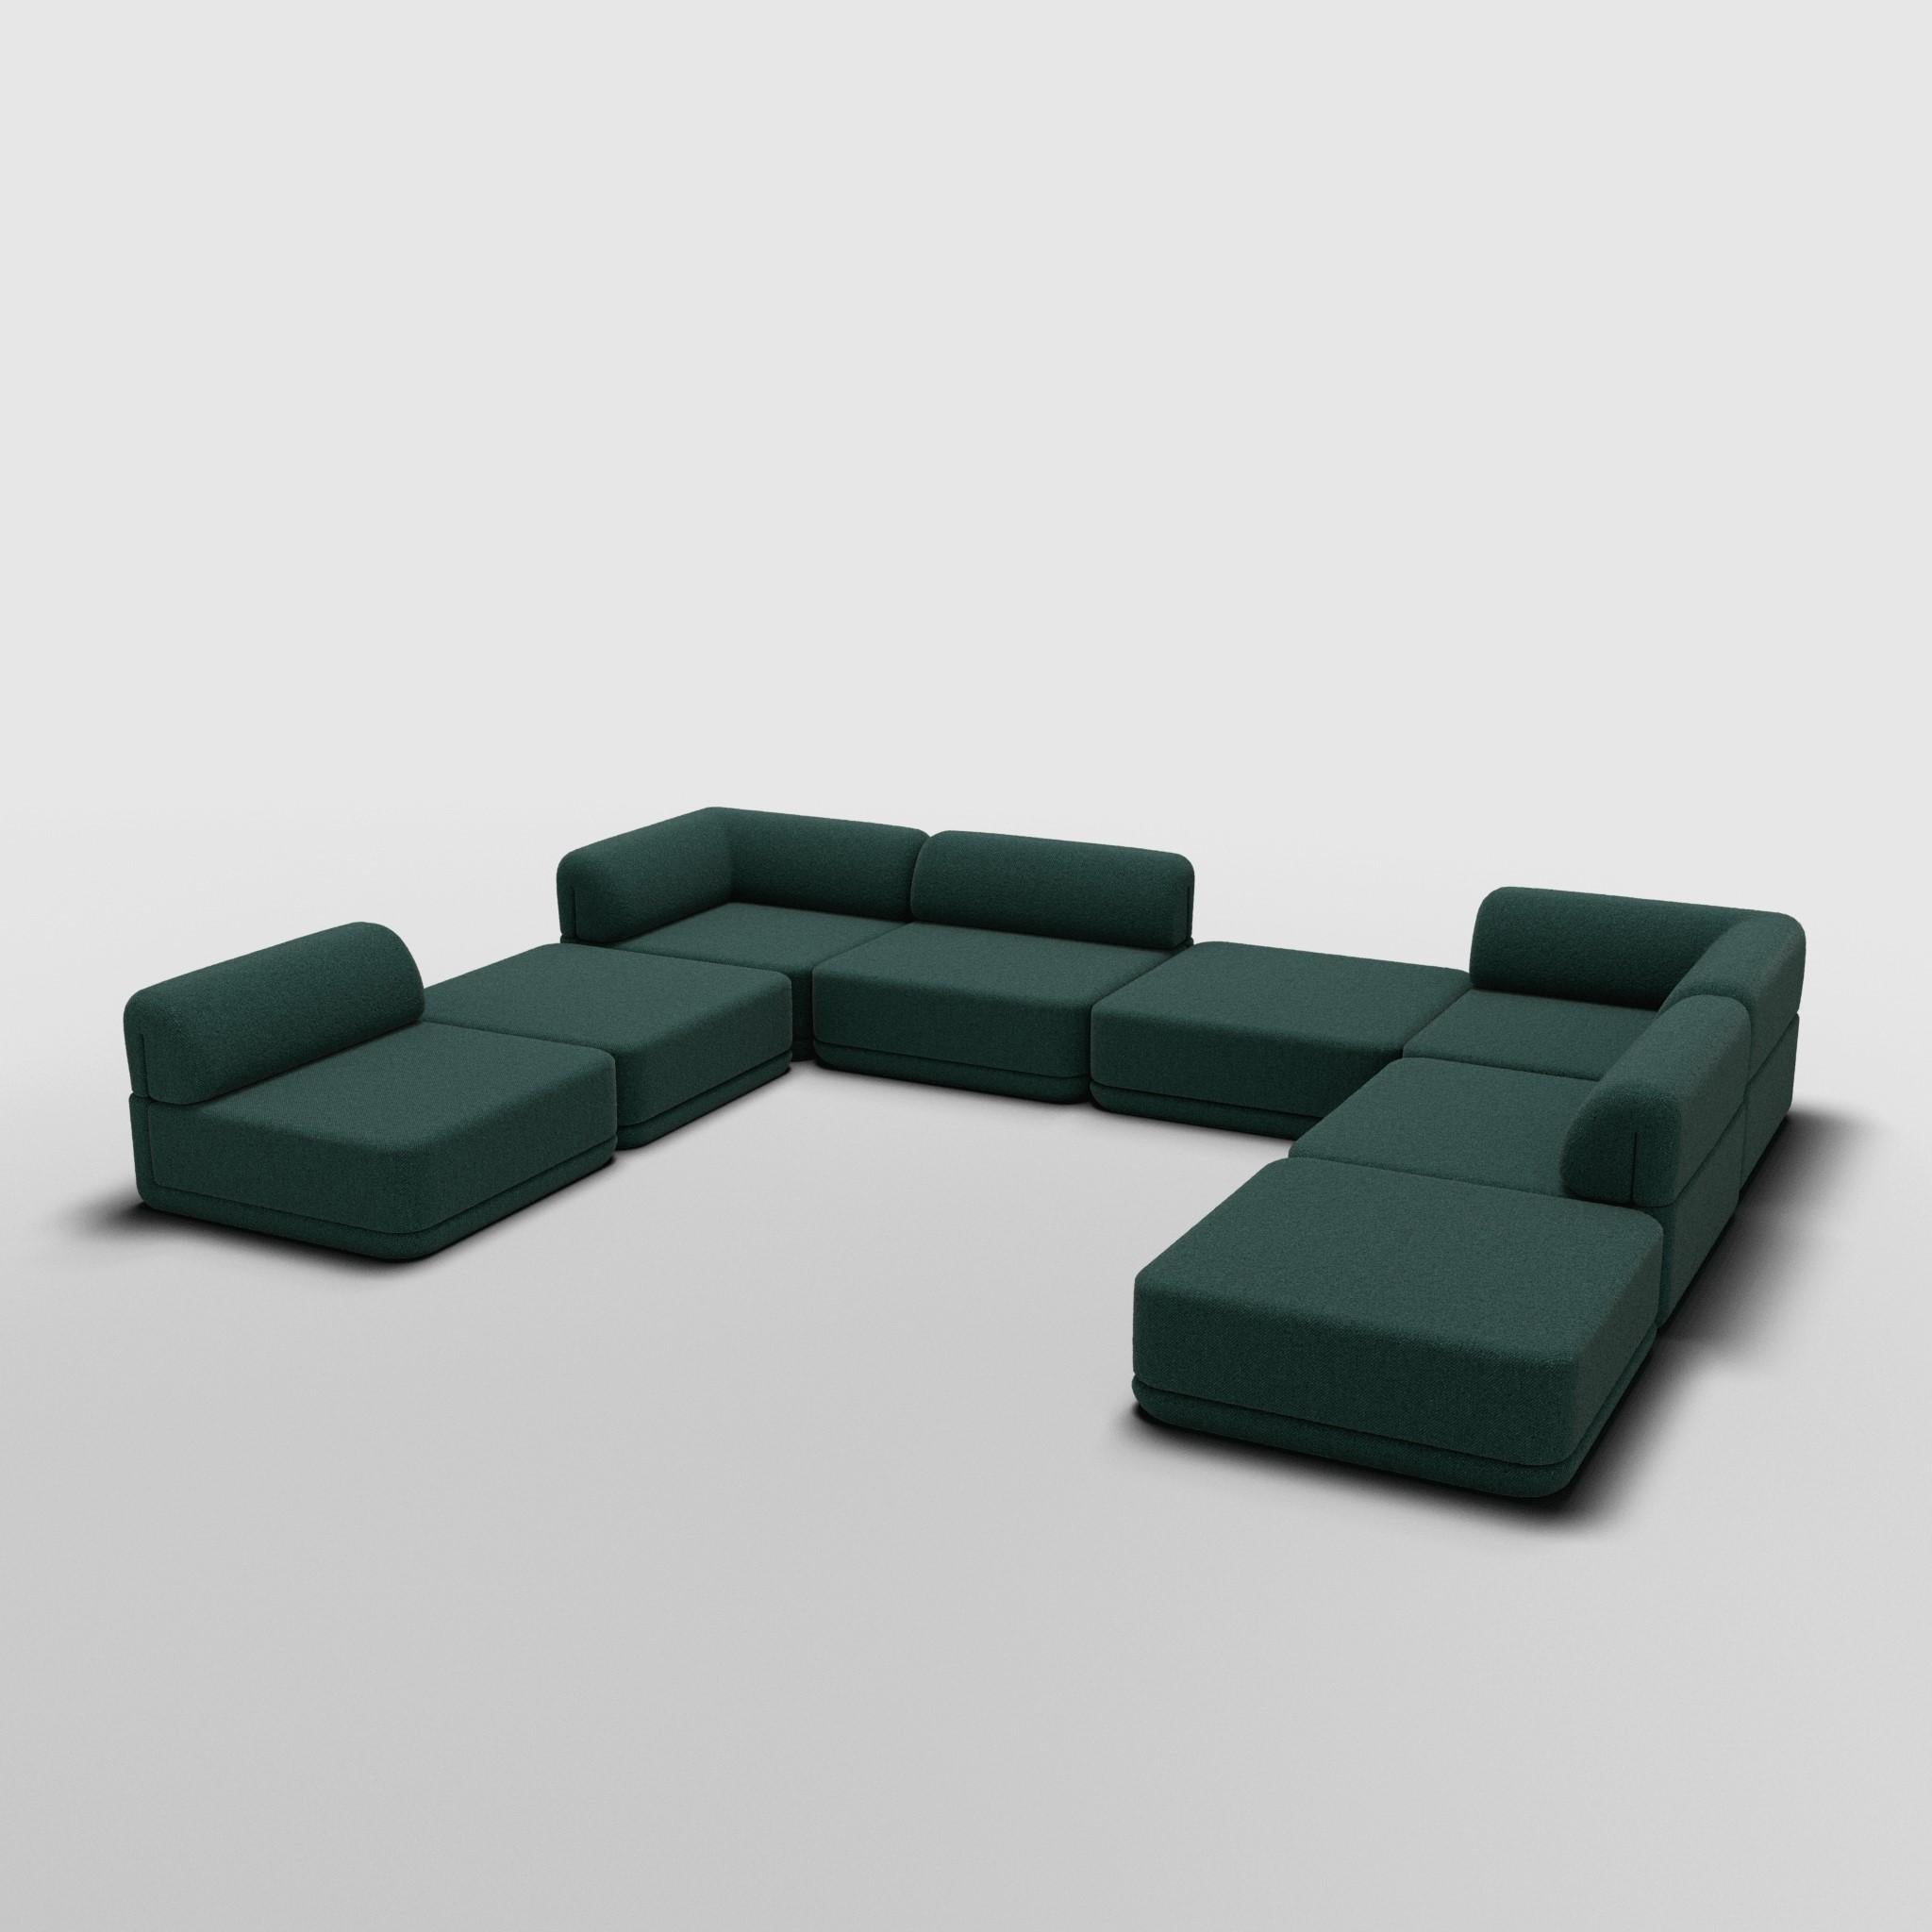 Sectionnel d'angle Full Mix - Inspiré par les meubles de luxe italiens des années 70

Découvrez le canapé Cube, où l'art rencontre l'adaptabilité. Son design sculptural et son confort personnalisable créent des possibilités infinies pour votre